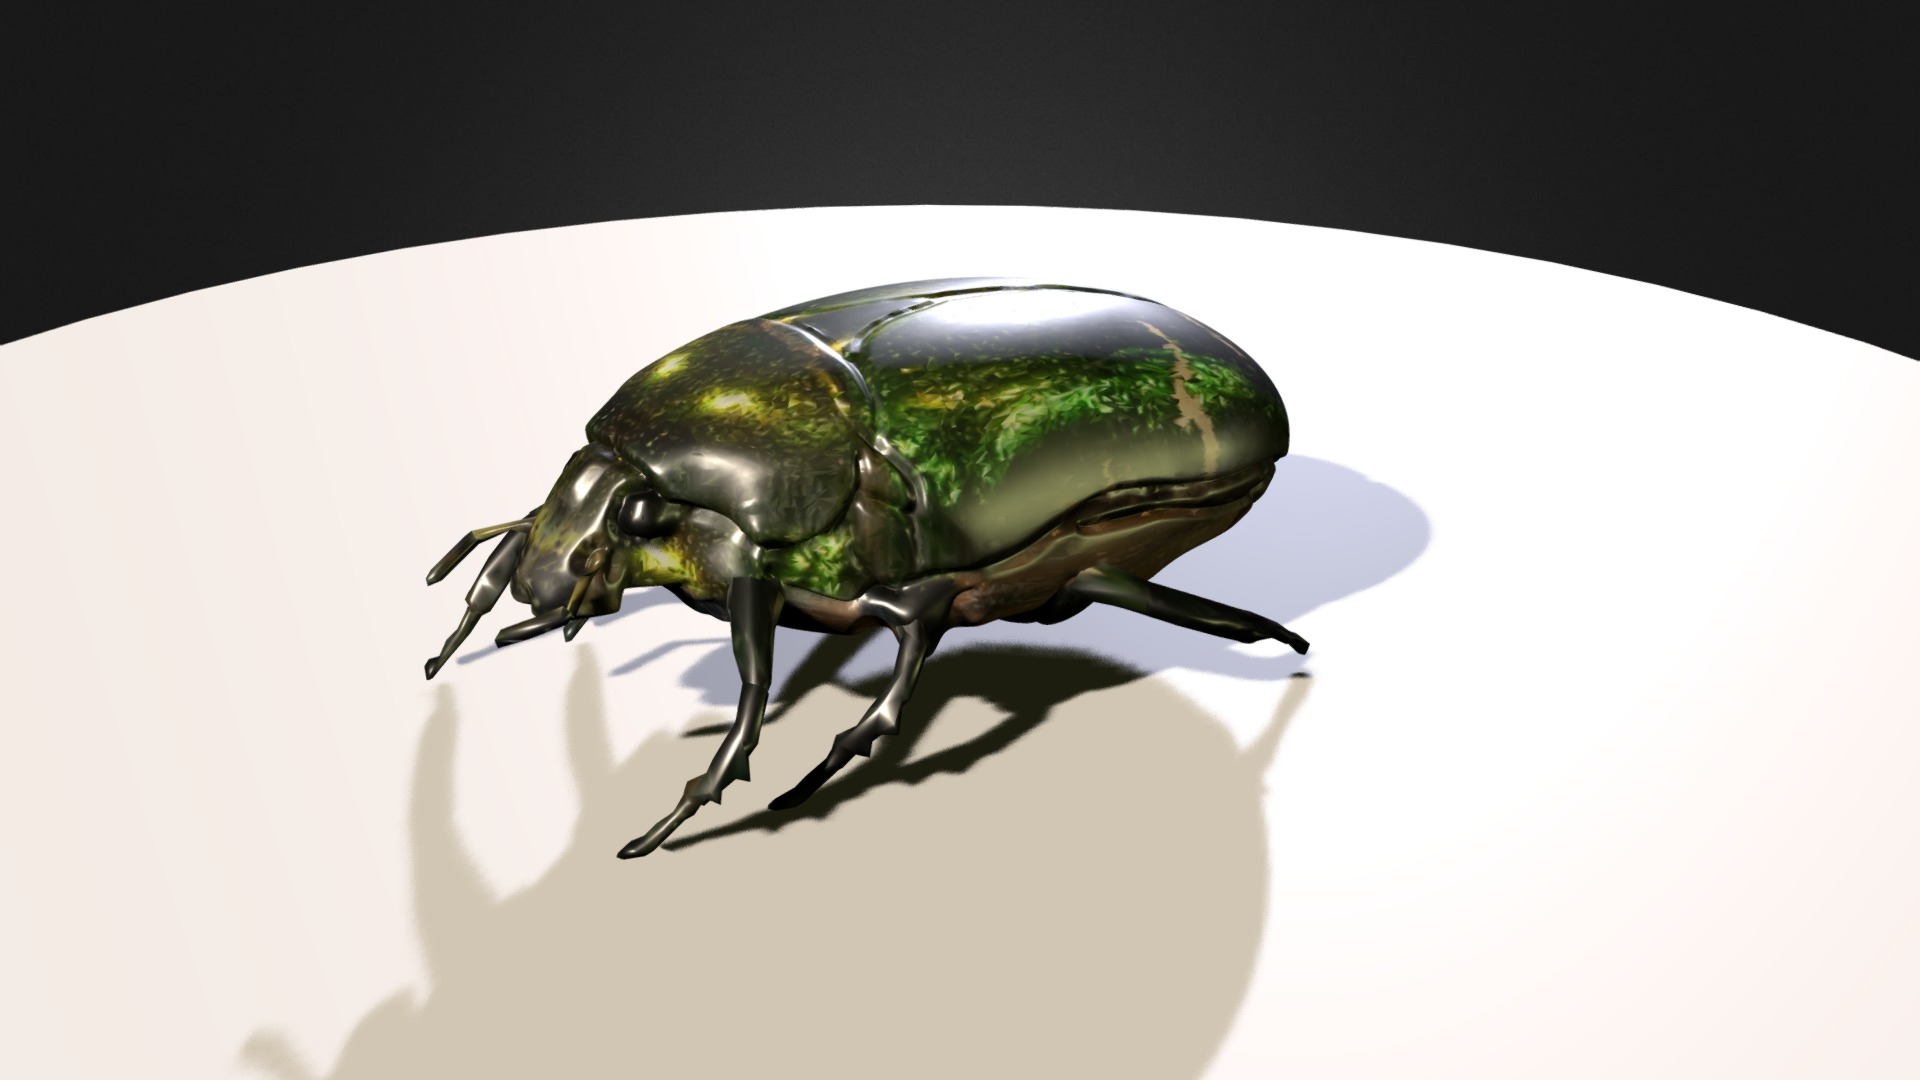 3D model Maggiolino Cetonia Aurata – Animazione - This is a 3D model of the Maggiolino Cetonia Aurata - Animazione. The 3D model is about a green beetle on a white surface.